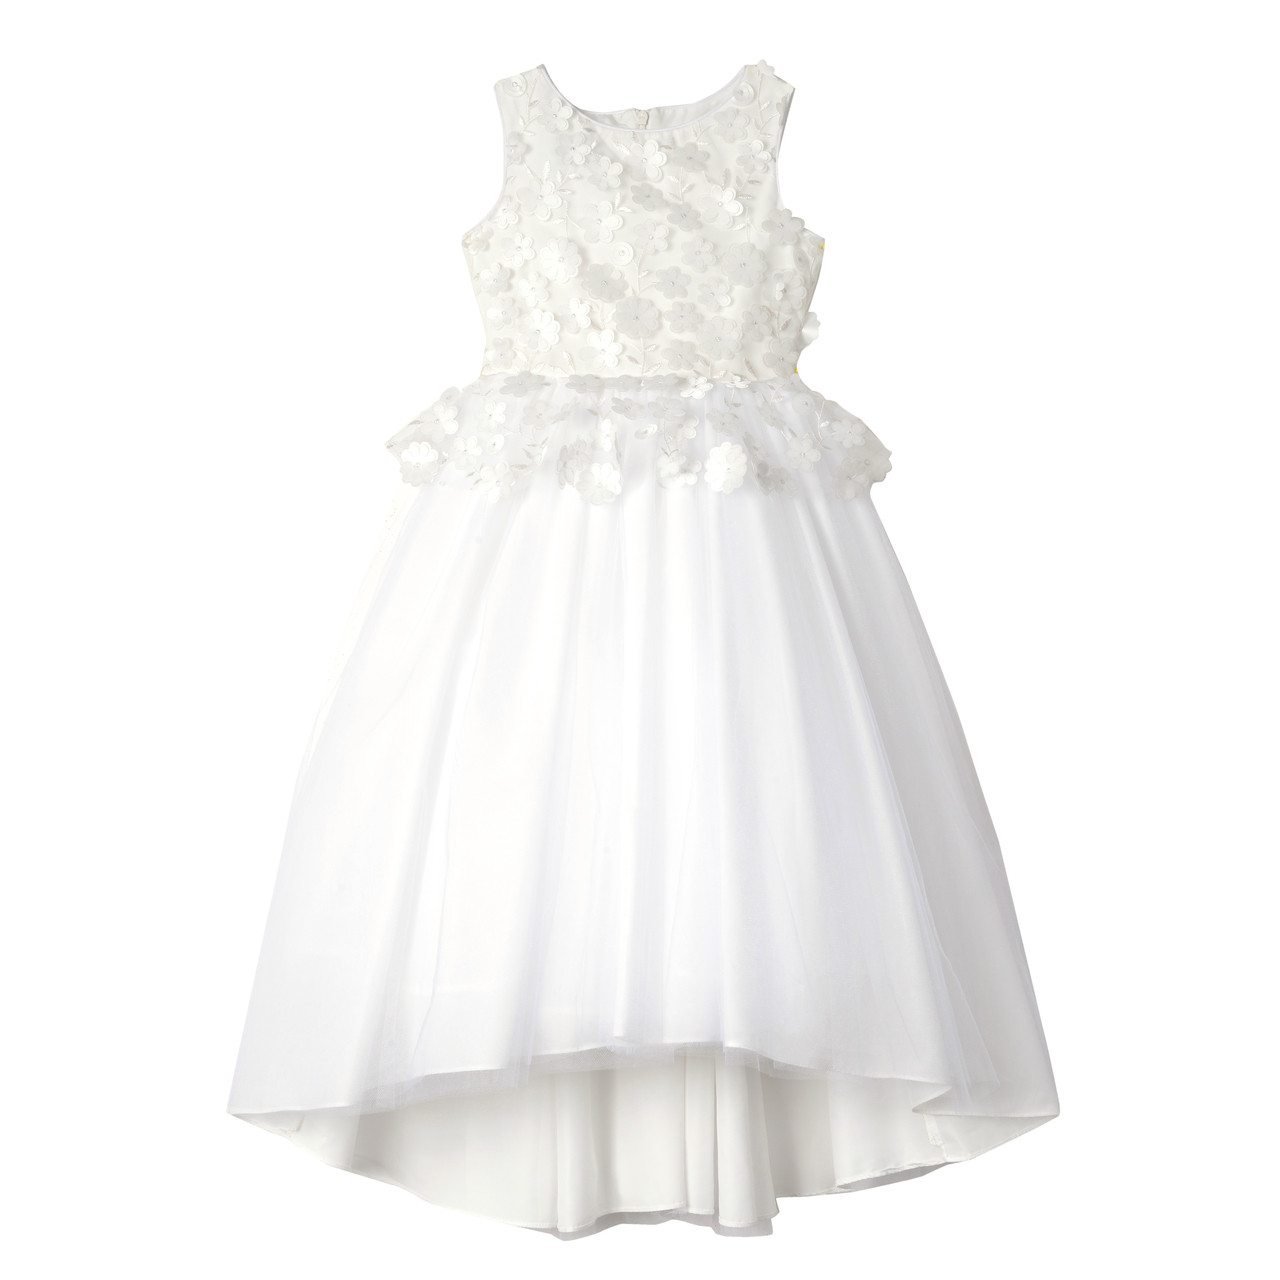 white peplum dress size 16